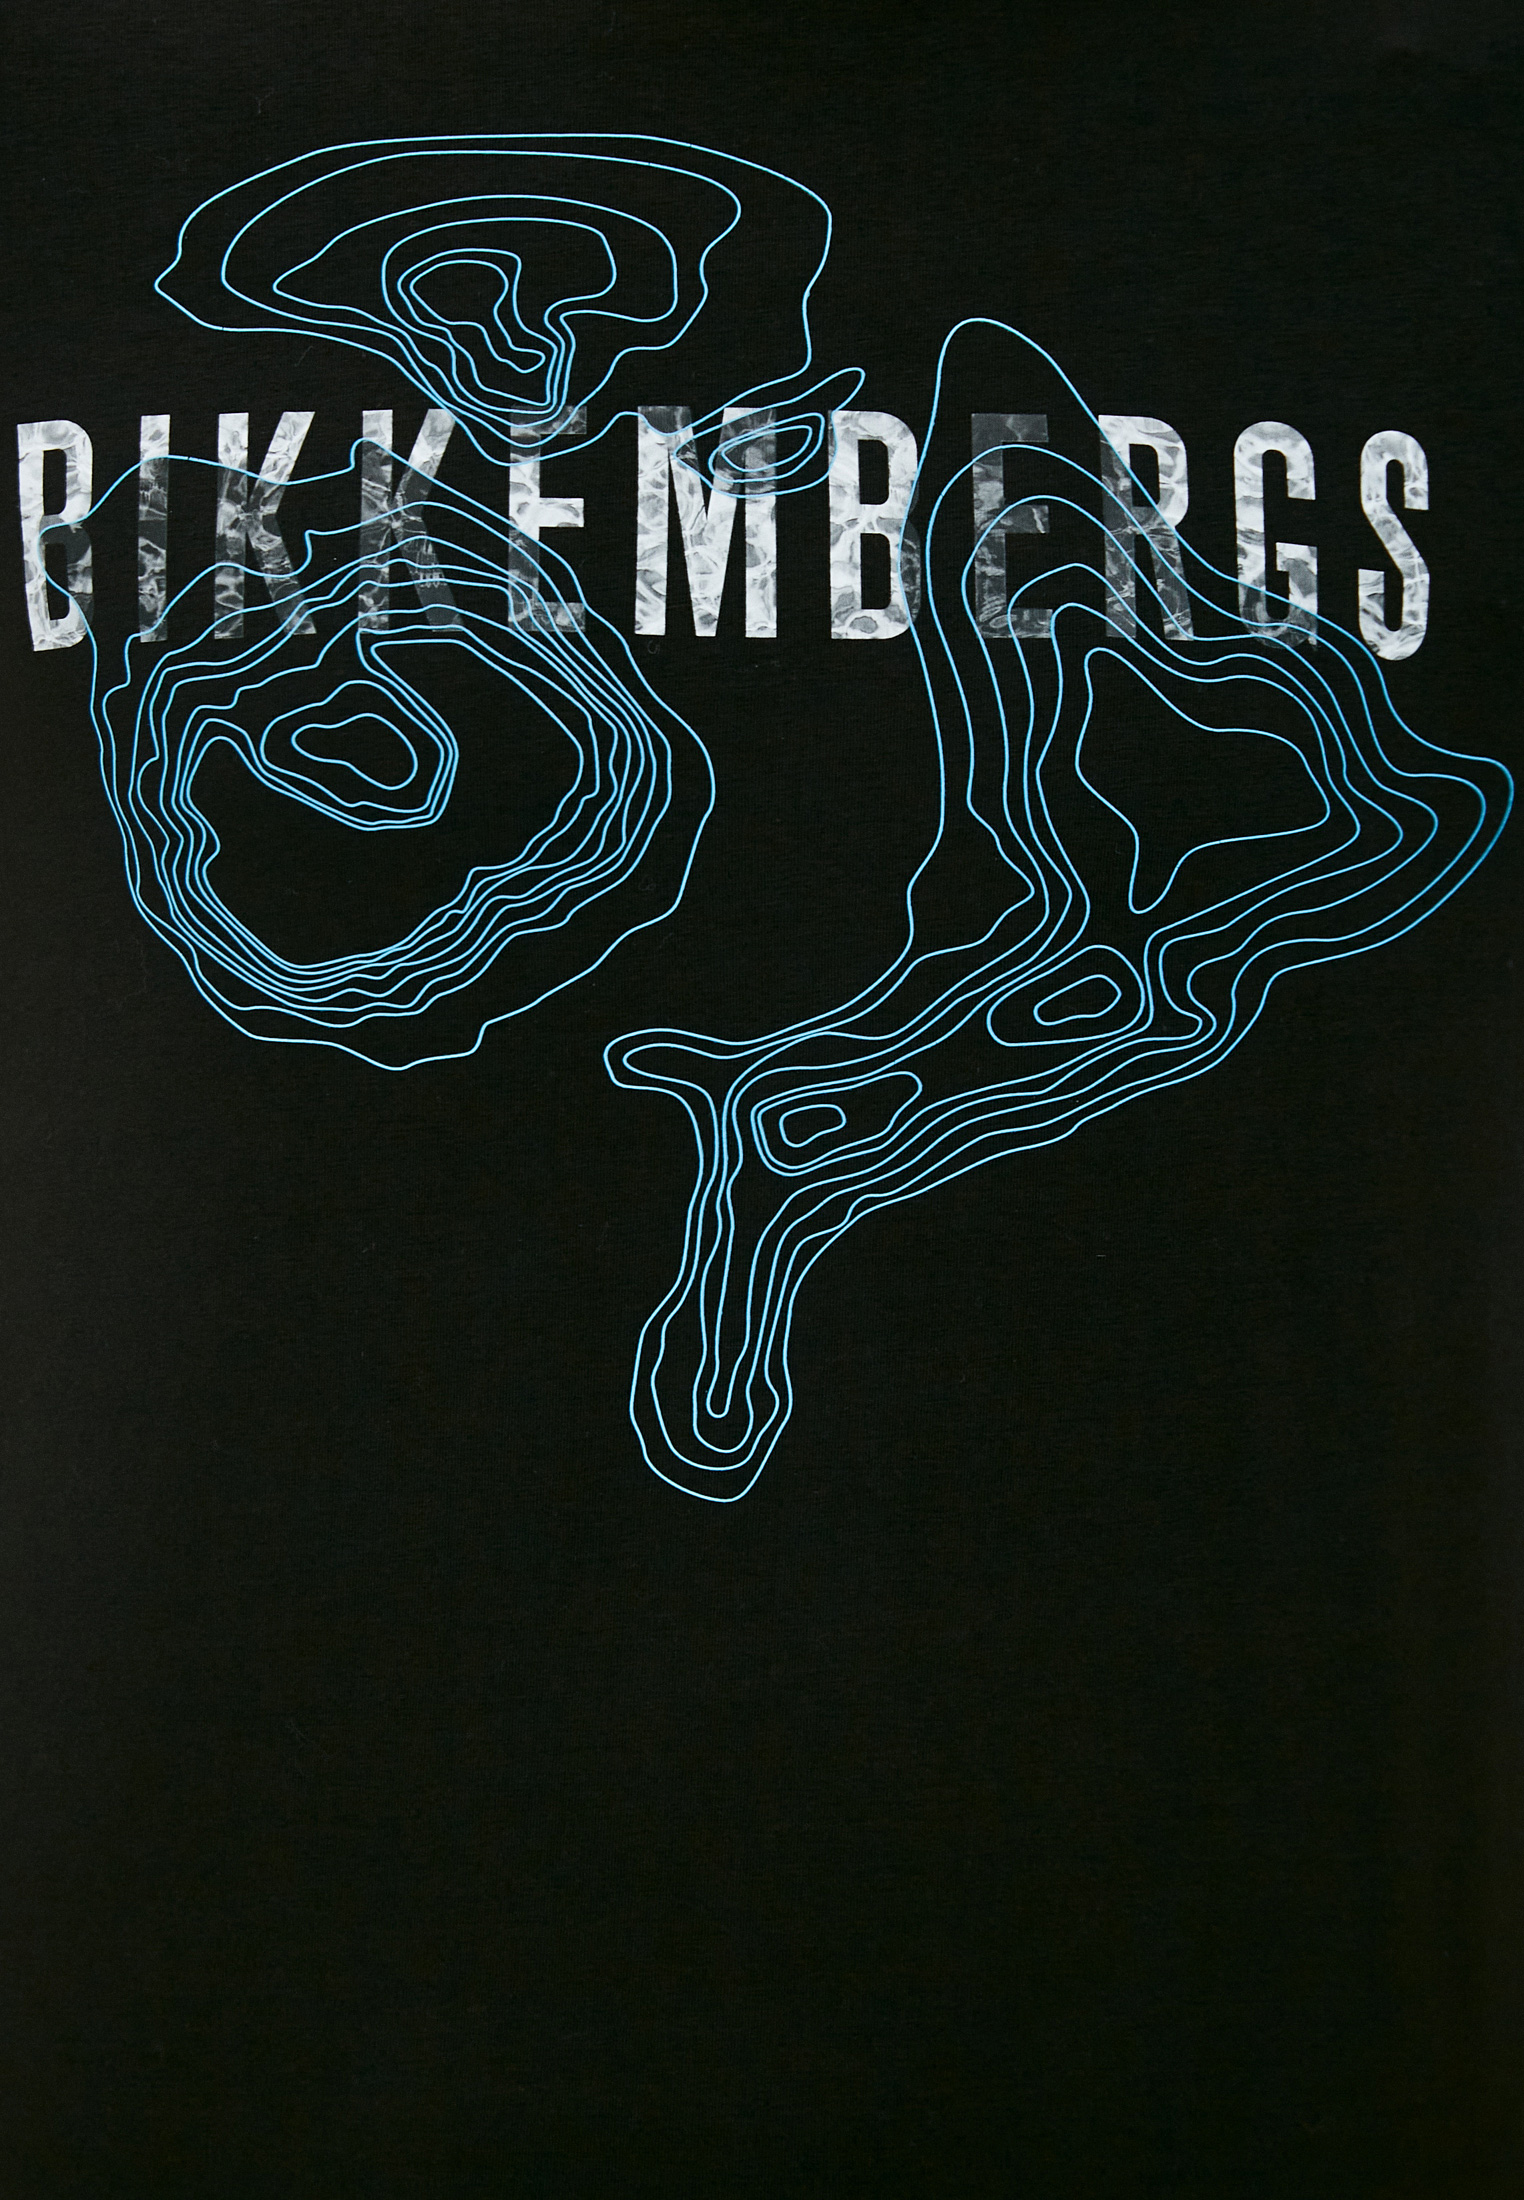 Мужская футболка Bikkembergs (Биккембергс) C 4 101 24 E 1811: изображение 5